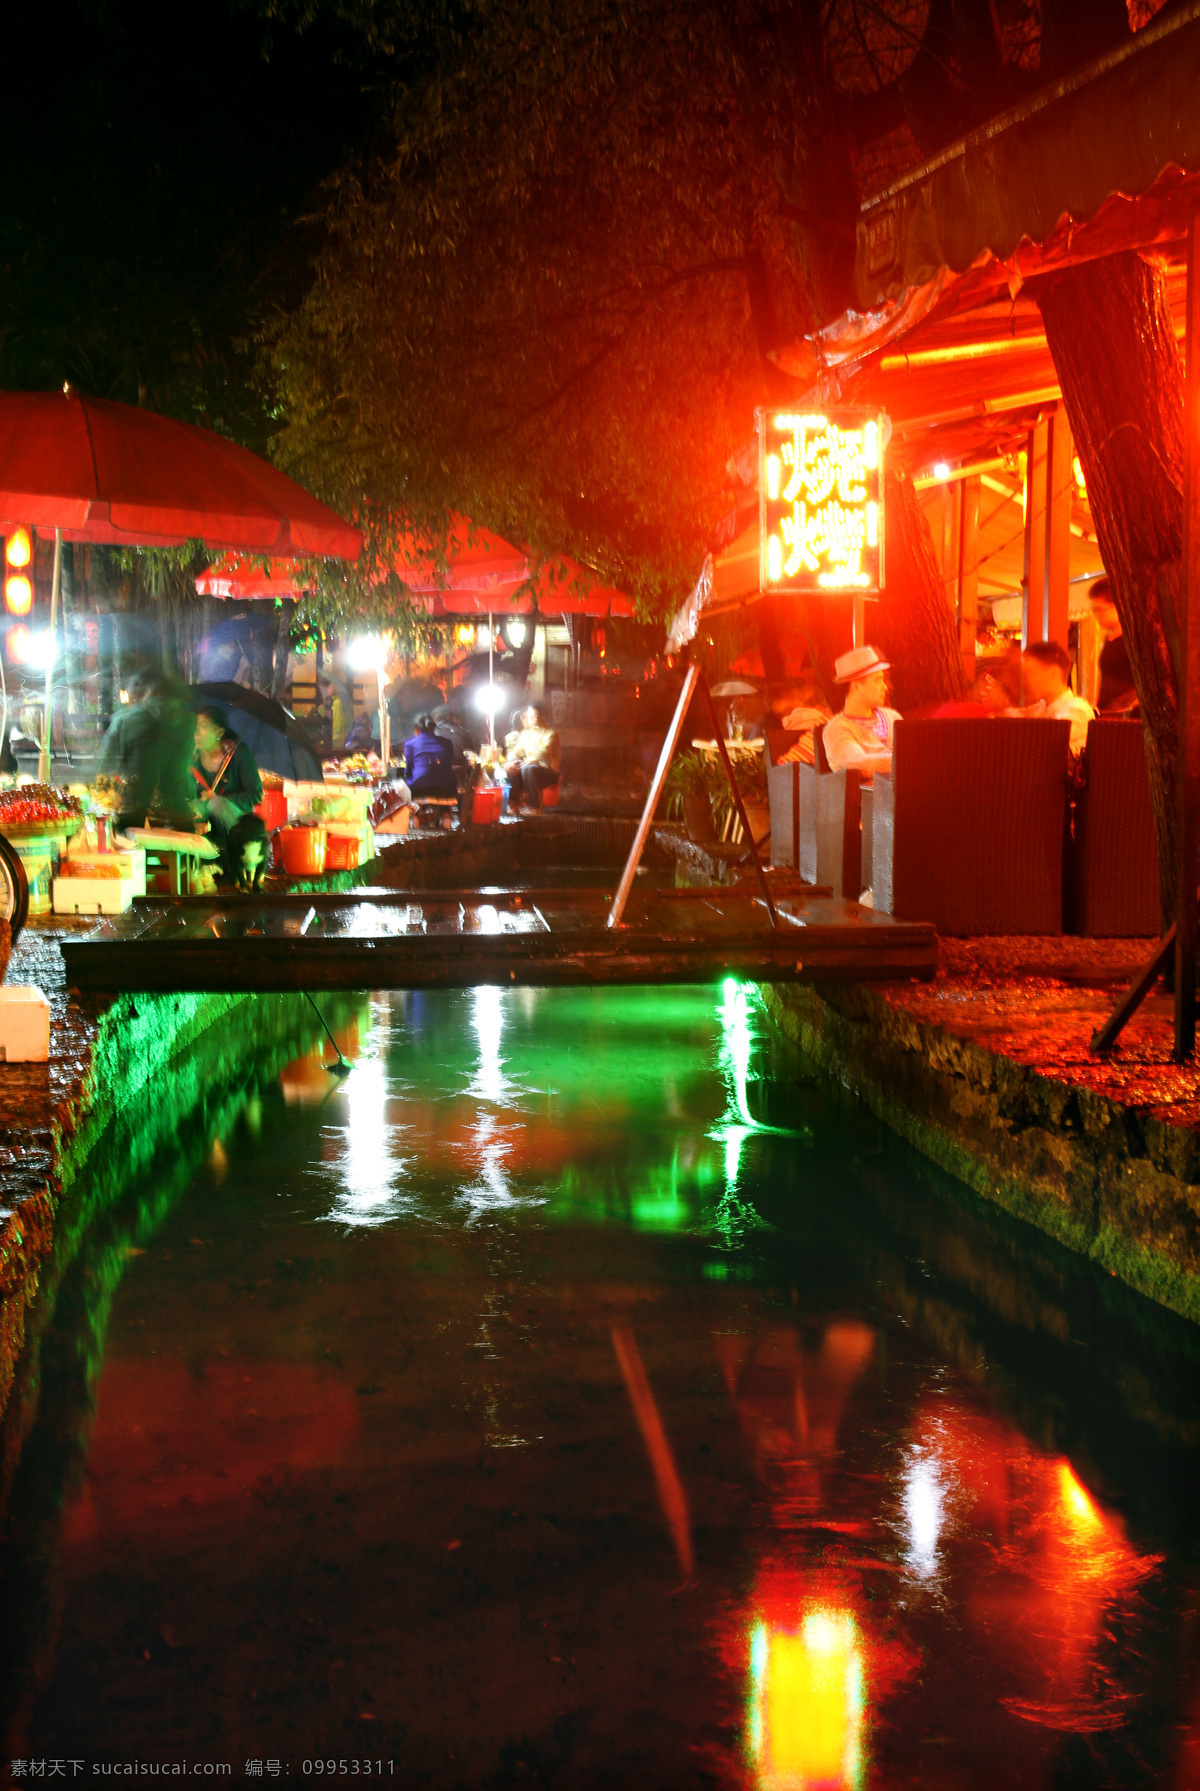 酒吧街 丽江 束河古镇 青石路 夜景 建筑 国内旅游 旅游摄影